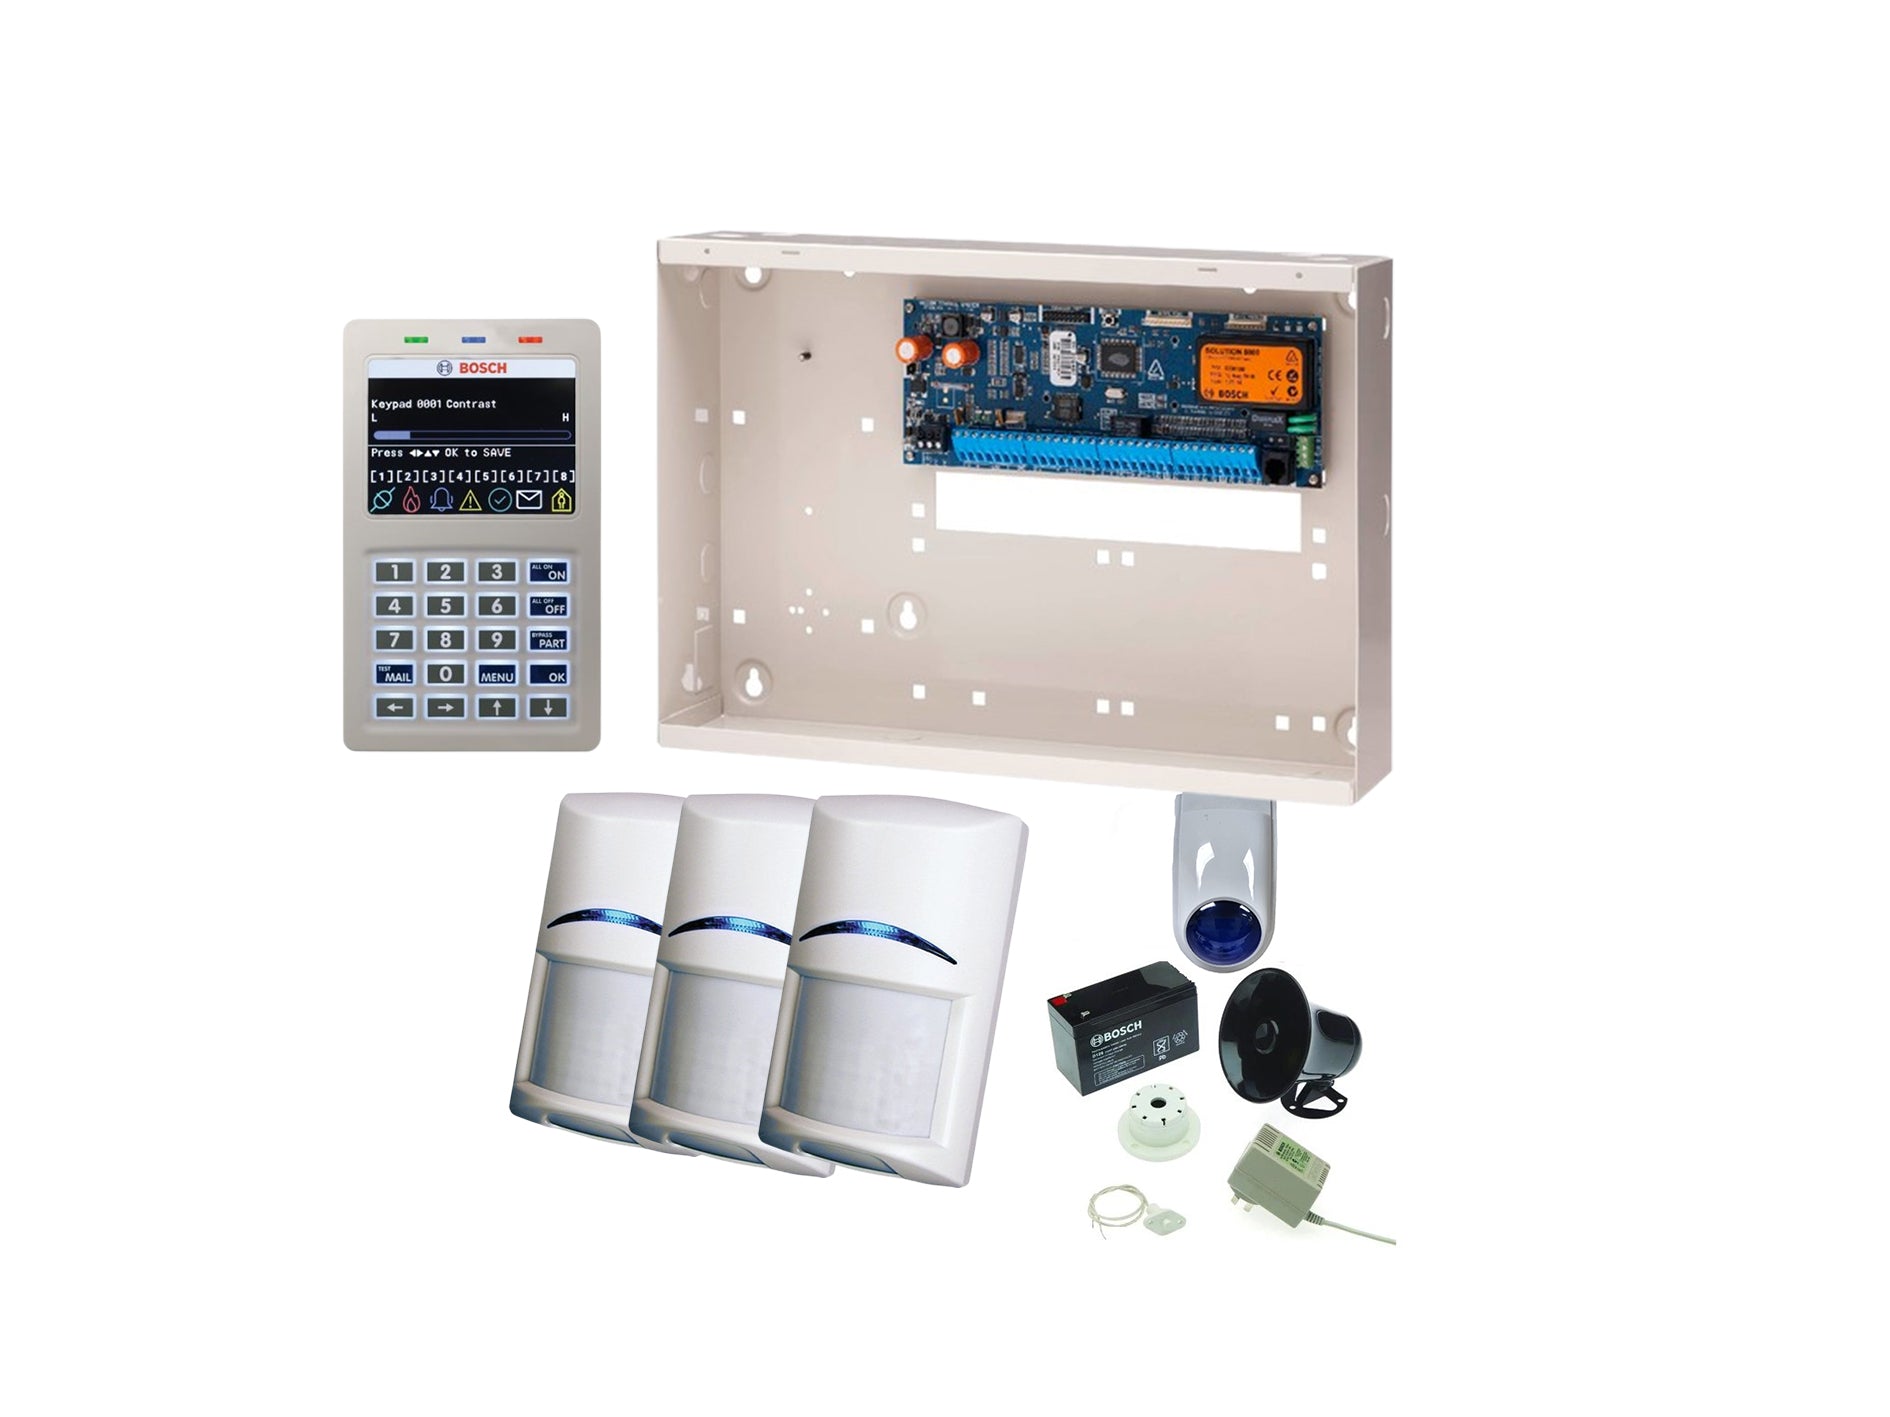 BOSCH, Solution 6000, Alarm kit, + CC610PB panel, CP737B Wifi Prox LCD keypad, 3x Quad PIR detectors +Accessories included